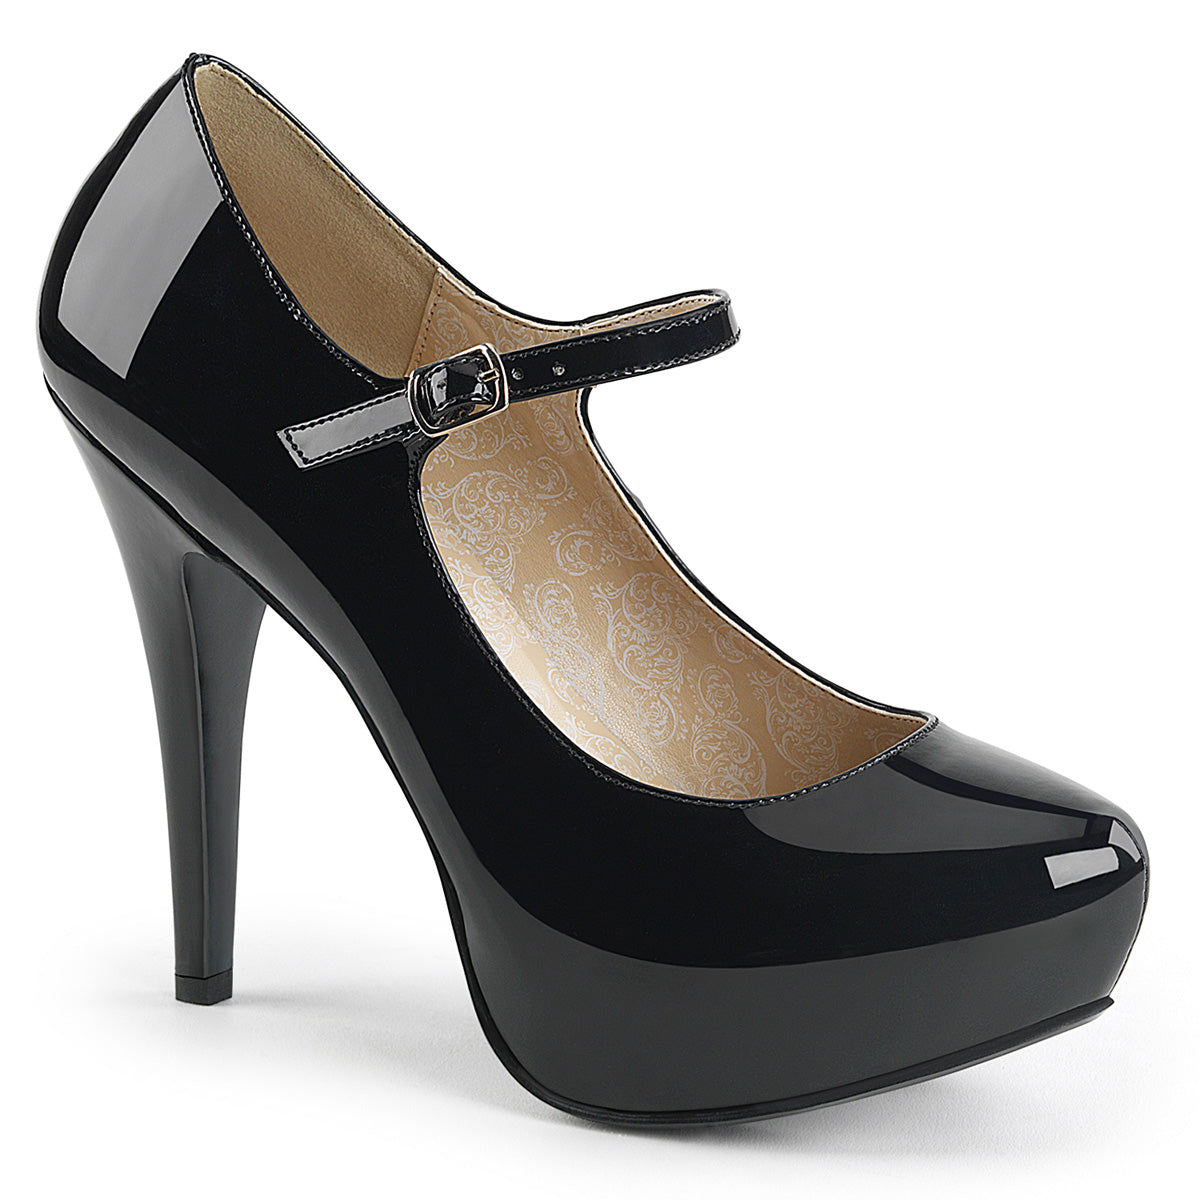 Chloe-02 Pink Label 5 "Heel Black Patent Platform schoenen